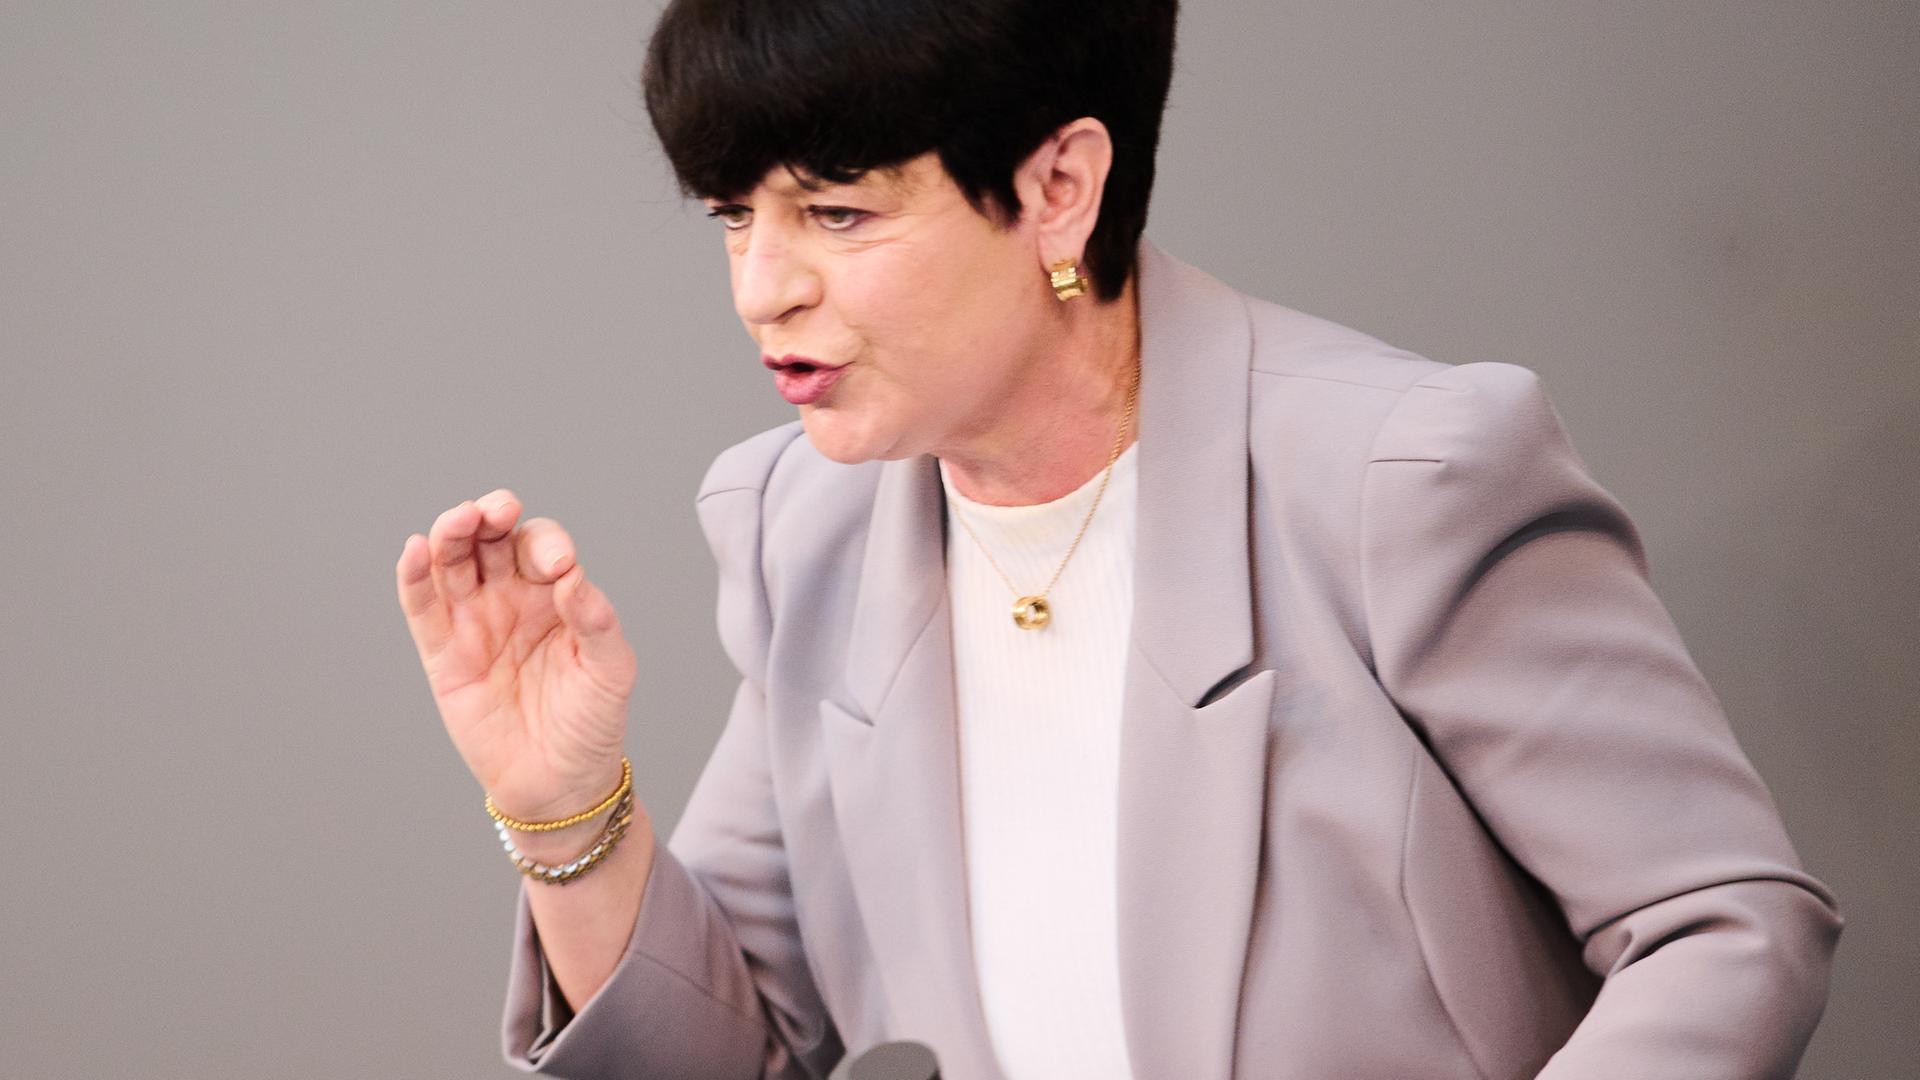 Christine Aschenberg-Dugnus, gesundheitspolitische Sprecherin der FDP-Fraktion, bei einer Regierungsbefragung in der Plenarsitzung im Deutschen Bundestag am 16.03.2022